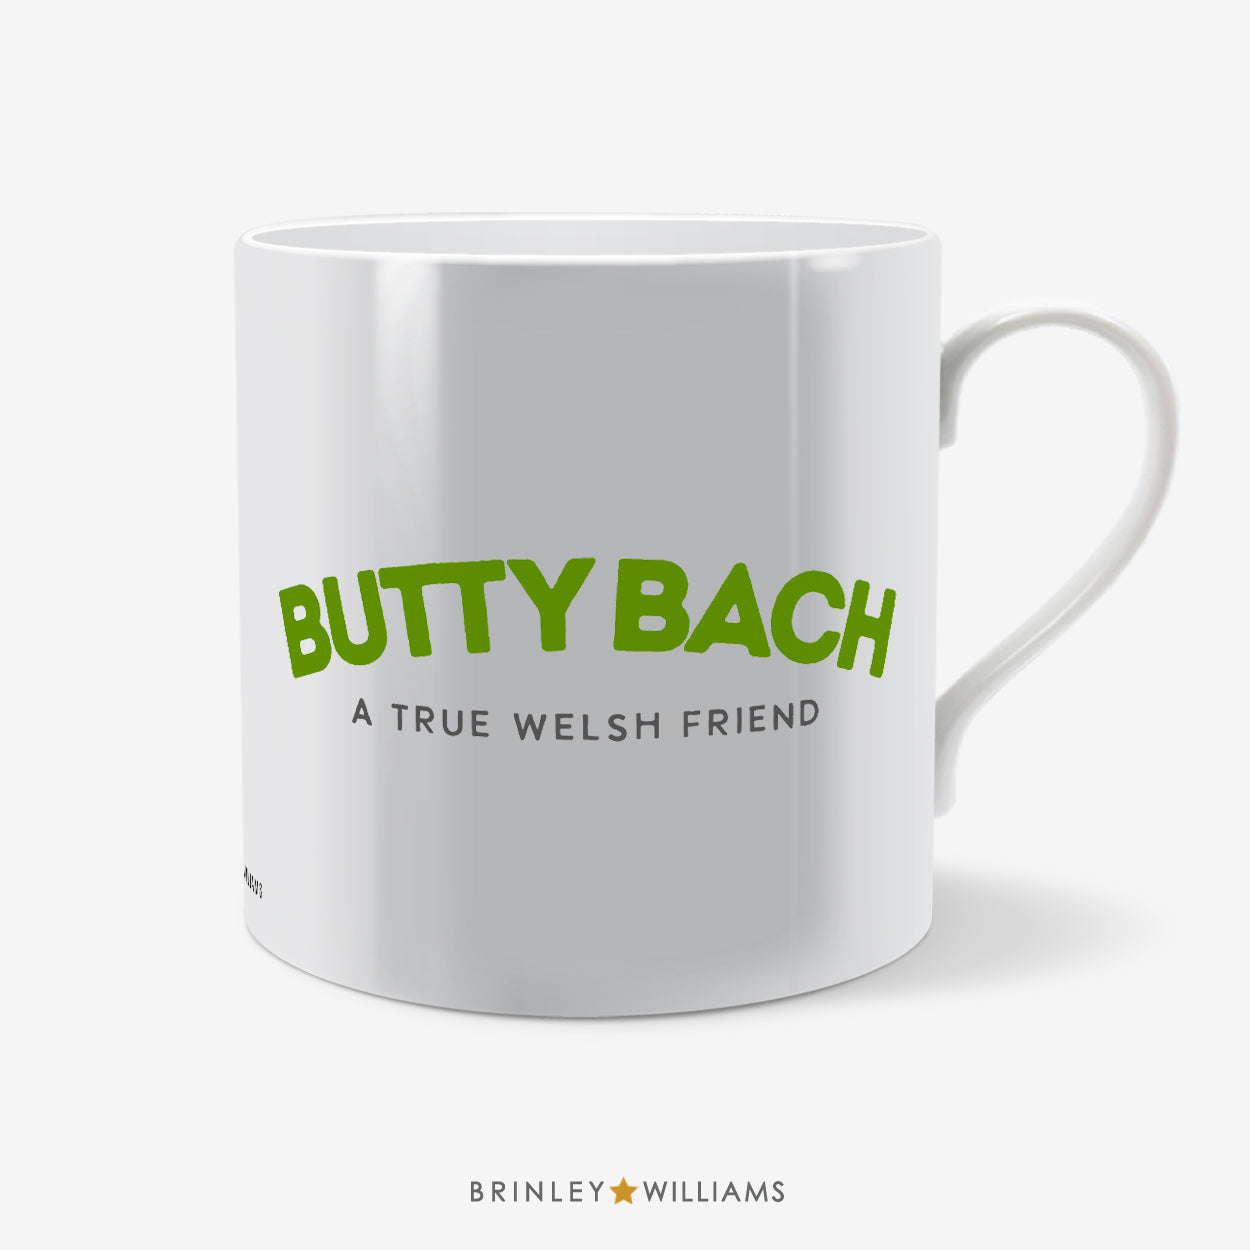 Butty Bach Welsh Mug - Green